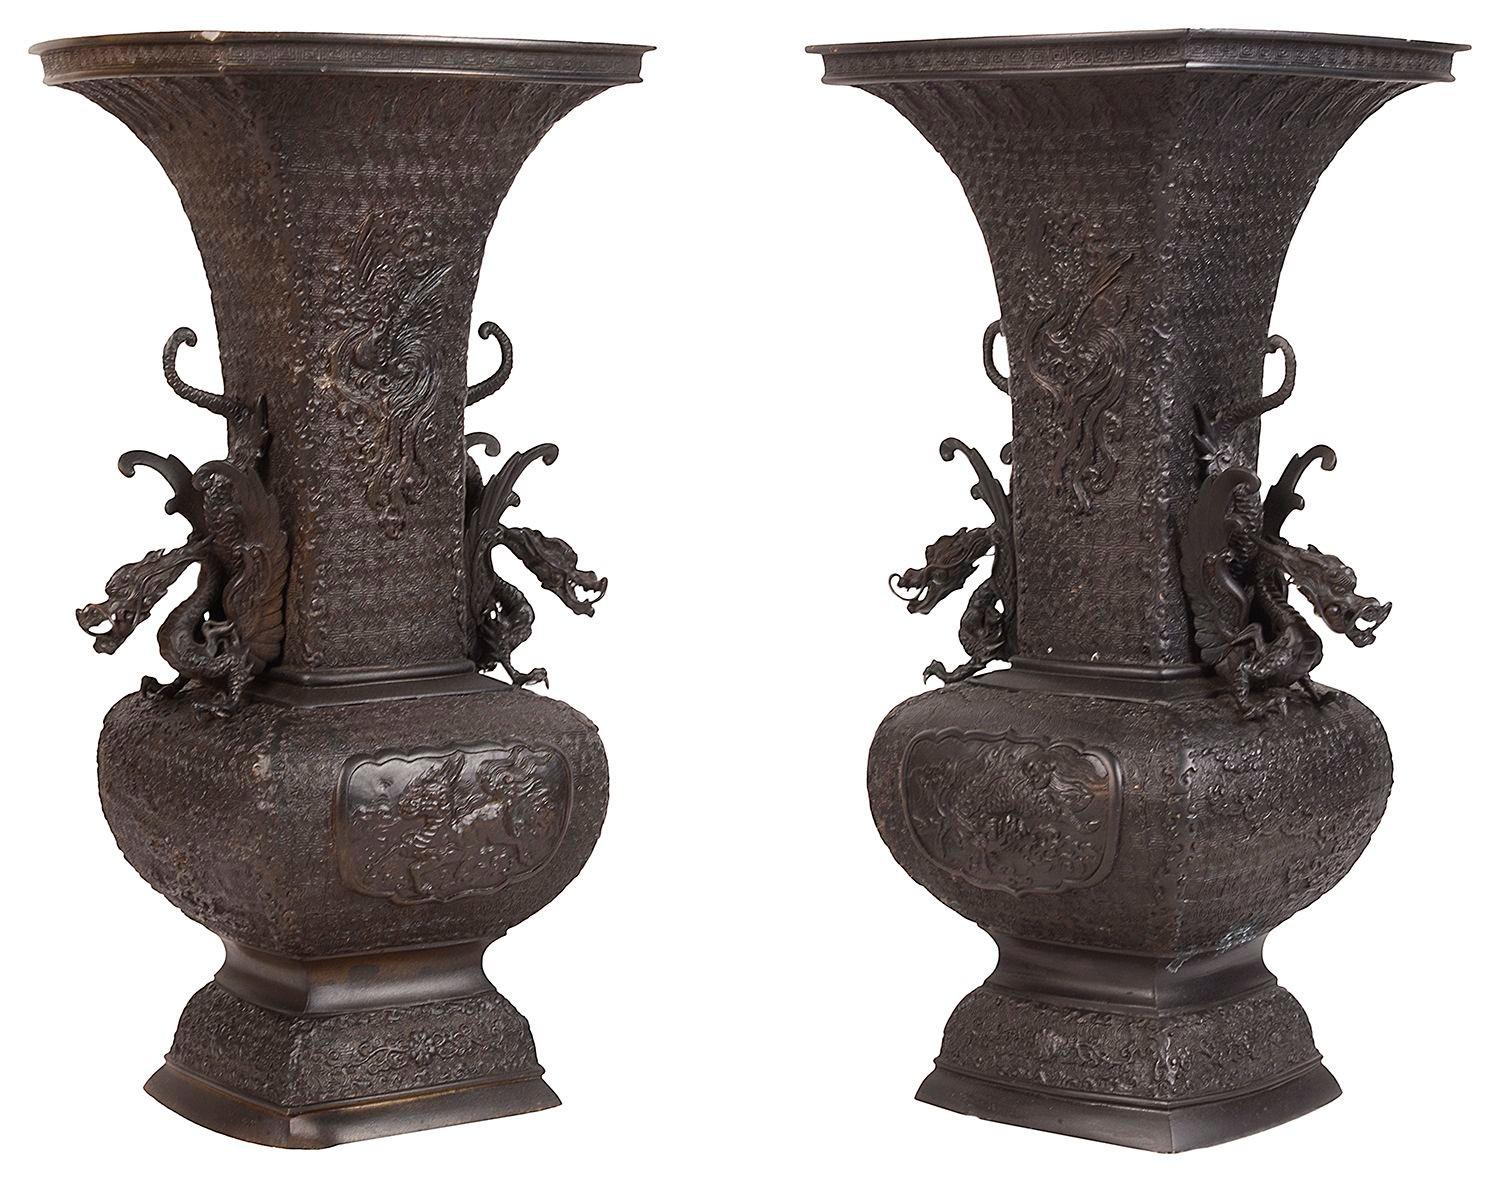 Très belle paire de vases / lampes en bronze de la fin du 19e siècle de la période japonaise Meiji (1868-1912). Magnifique décor classique en relief avec des panneaux insérés représentant des créatures mythiques et des poignées de dragon, signé à la